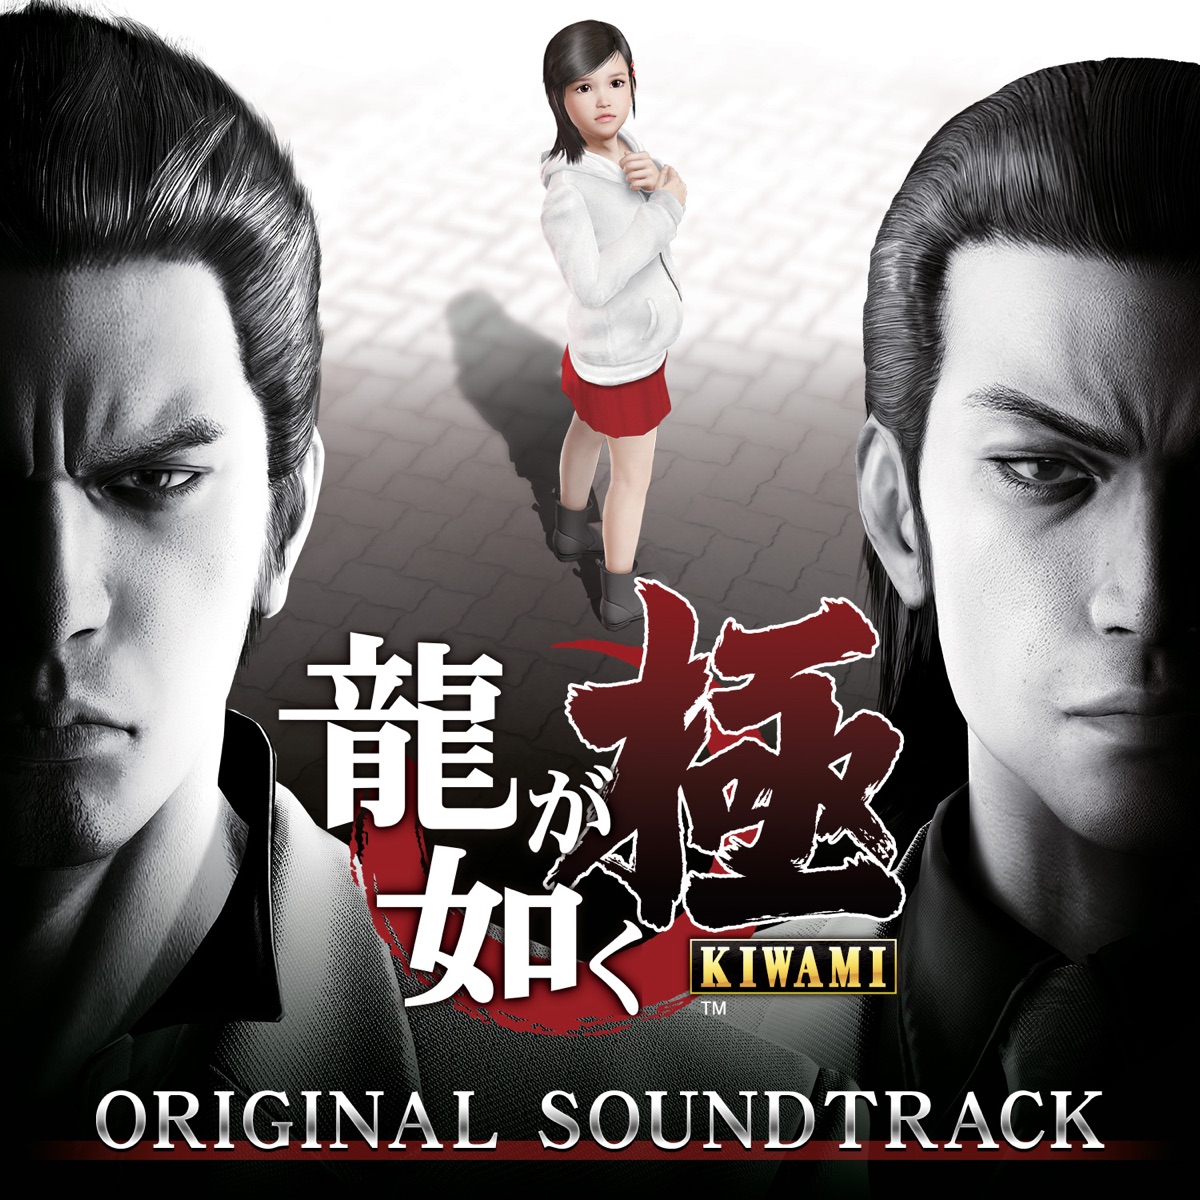 Stream Yakuza OST - Baka Mitai (ばかみたい) Kiryu full version.mp3 by YUOINAM